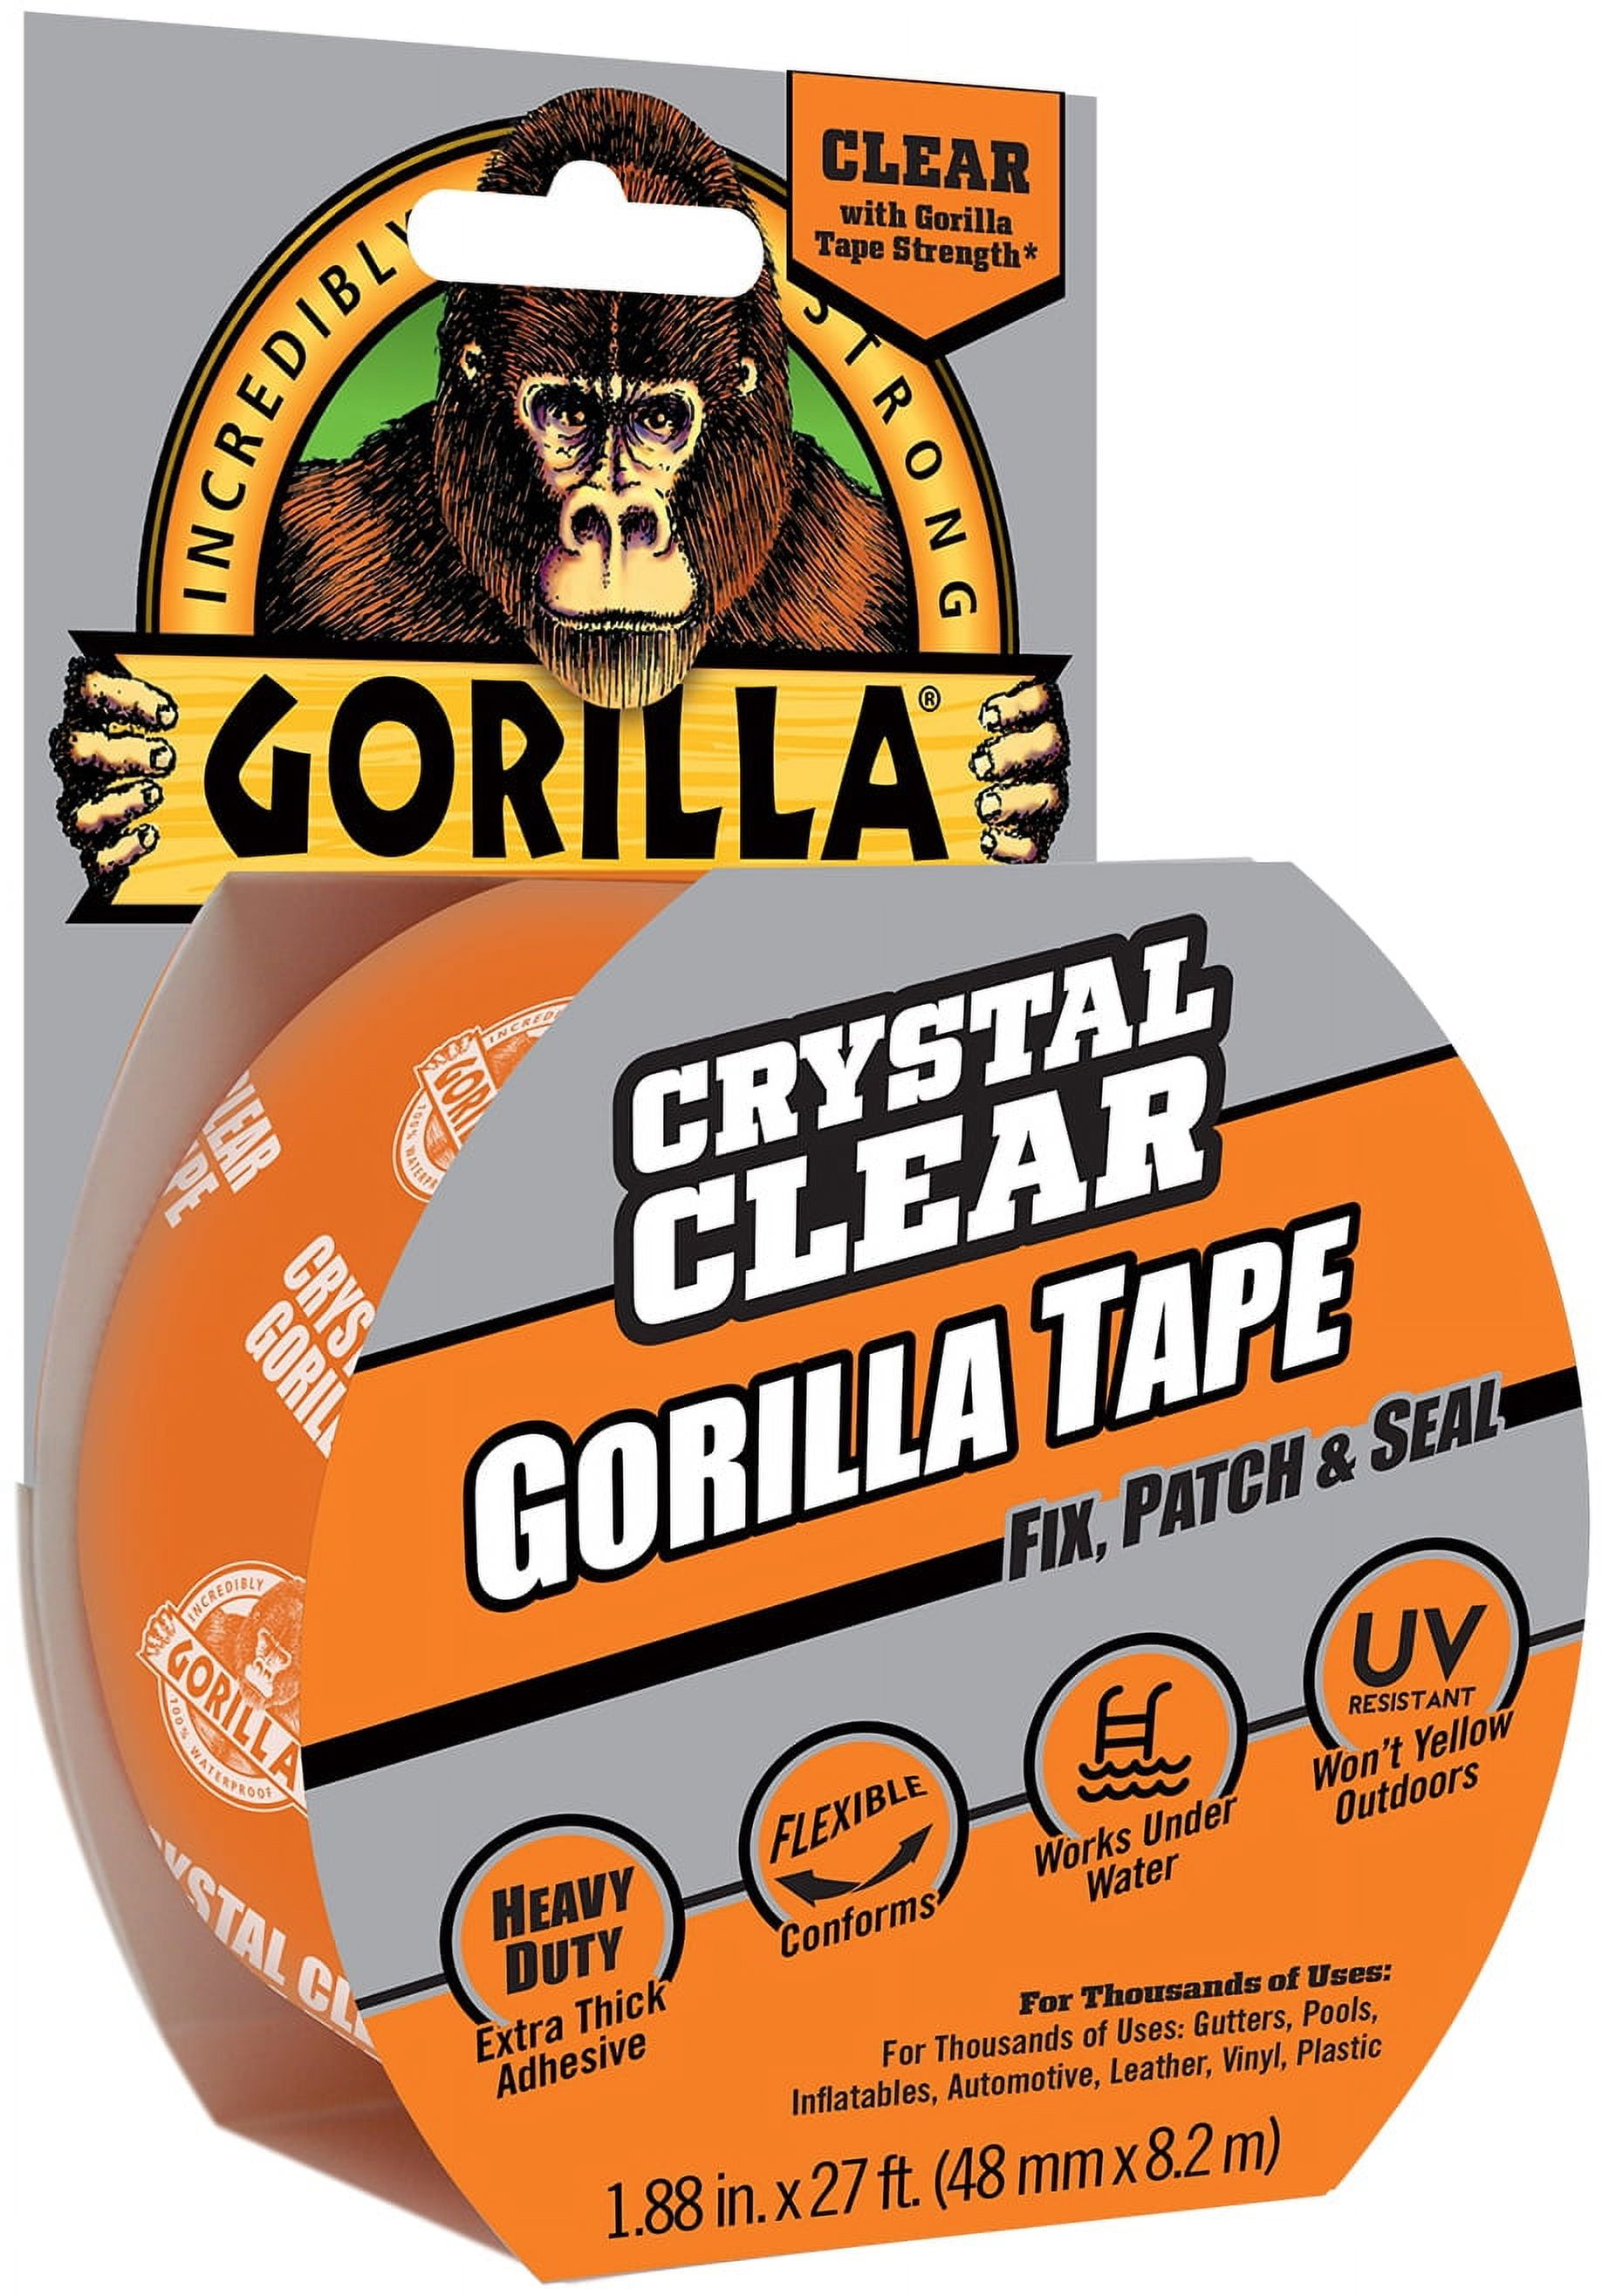 Gorilla Glue Full Color Logo - ONLINE EXCLUSIVE